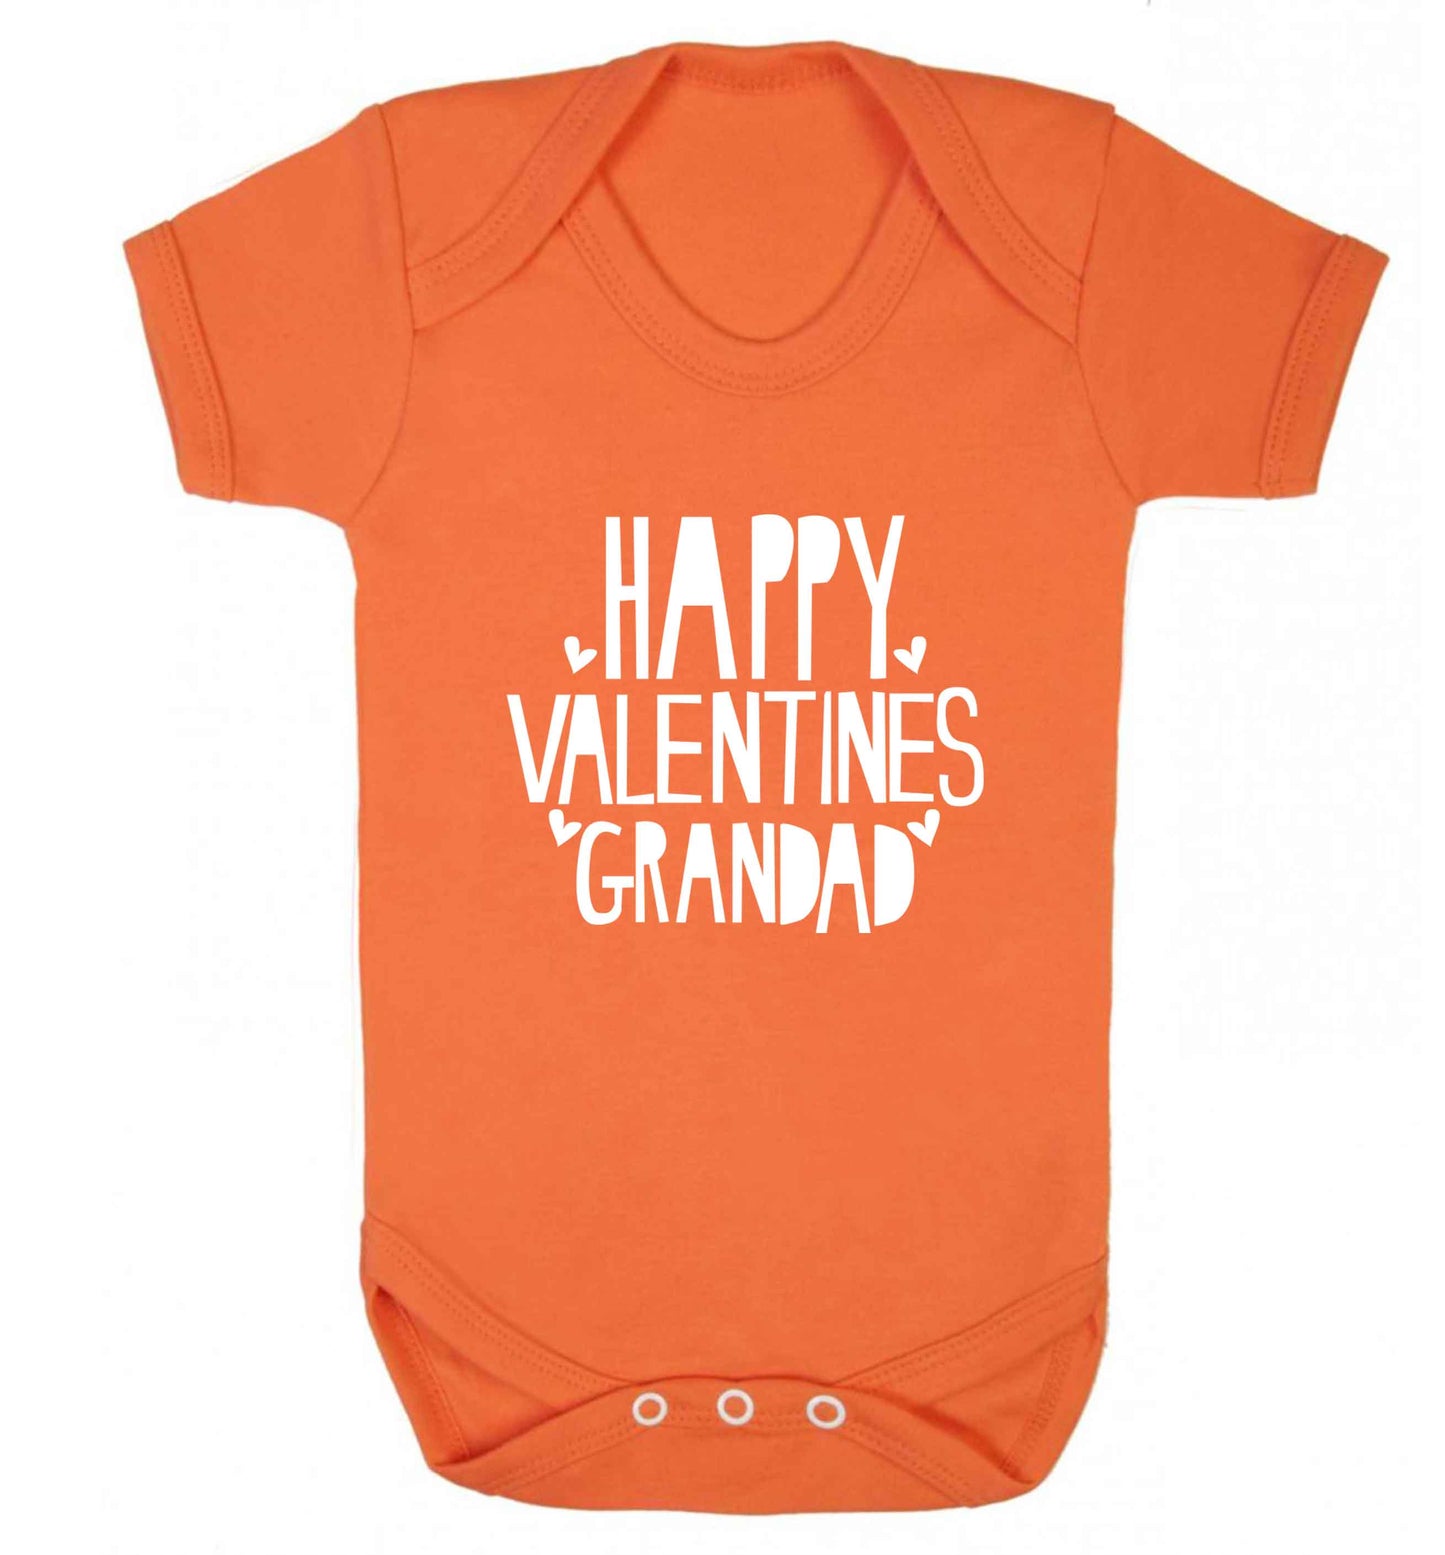 Happy valentines grandad baby vest orange 18-24 months